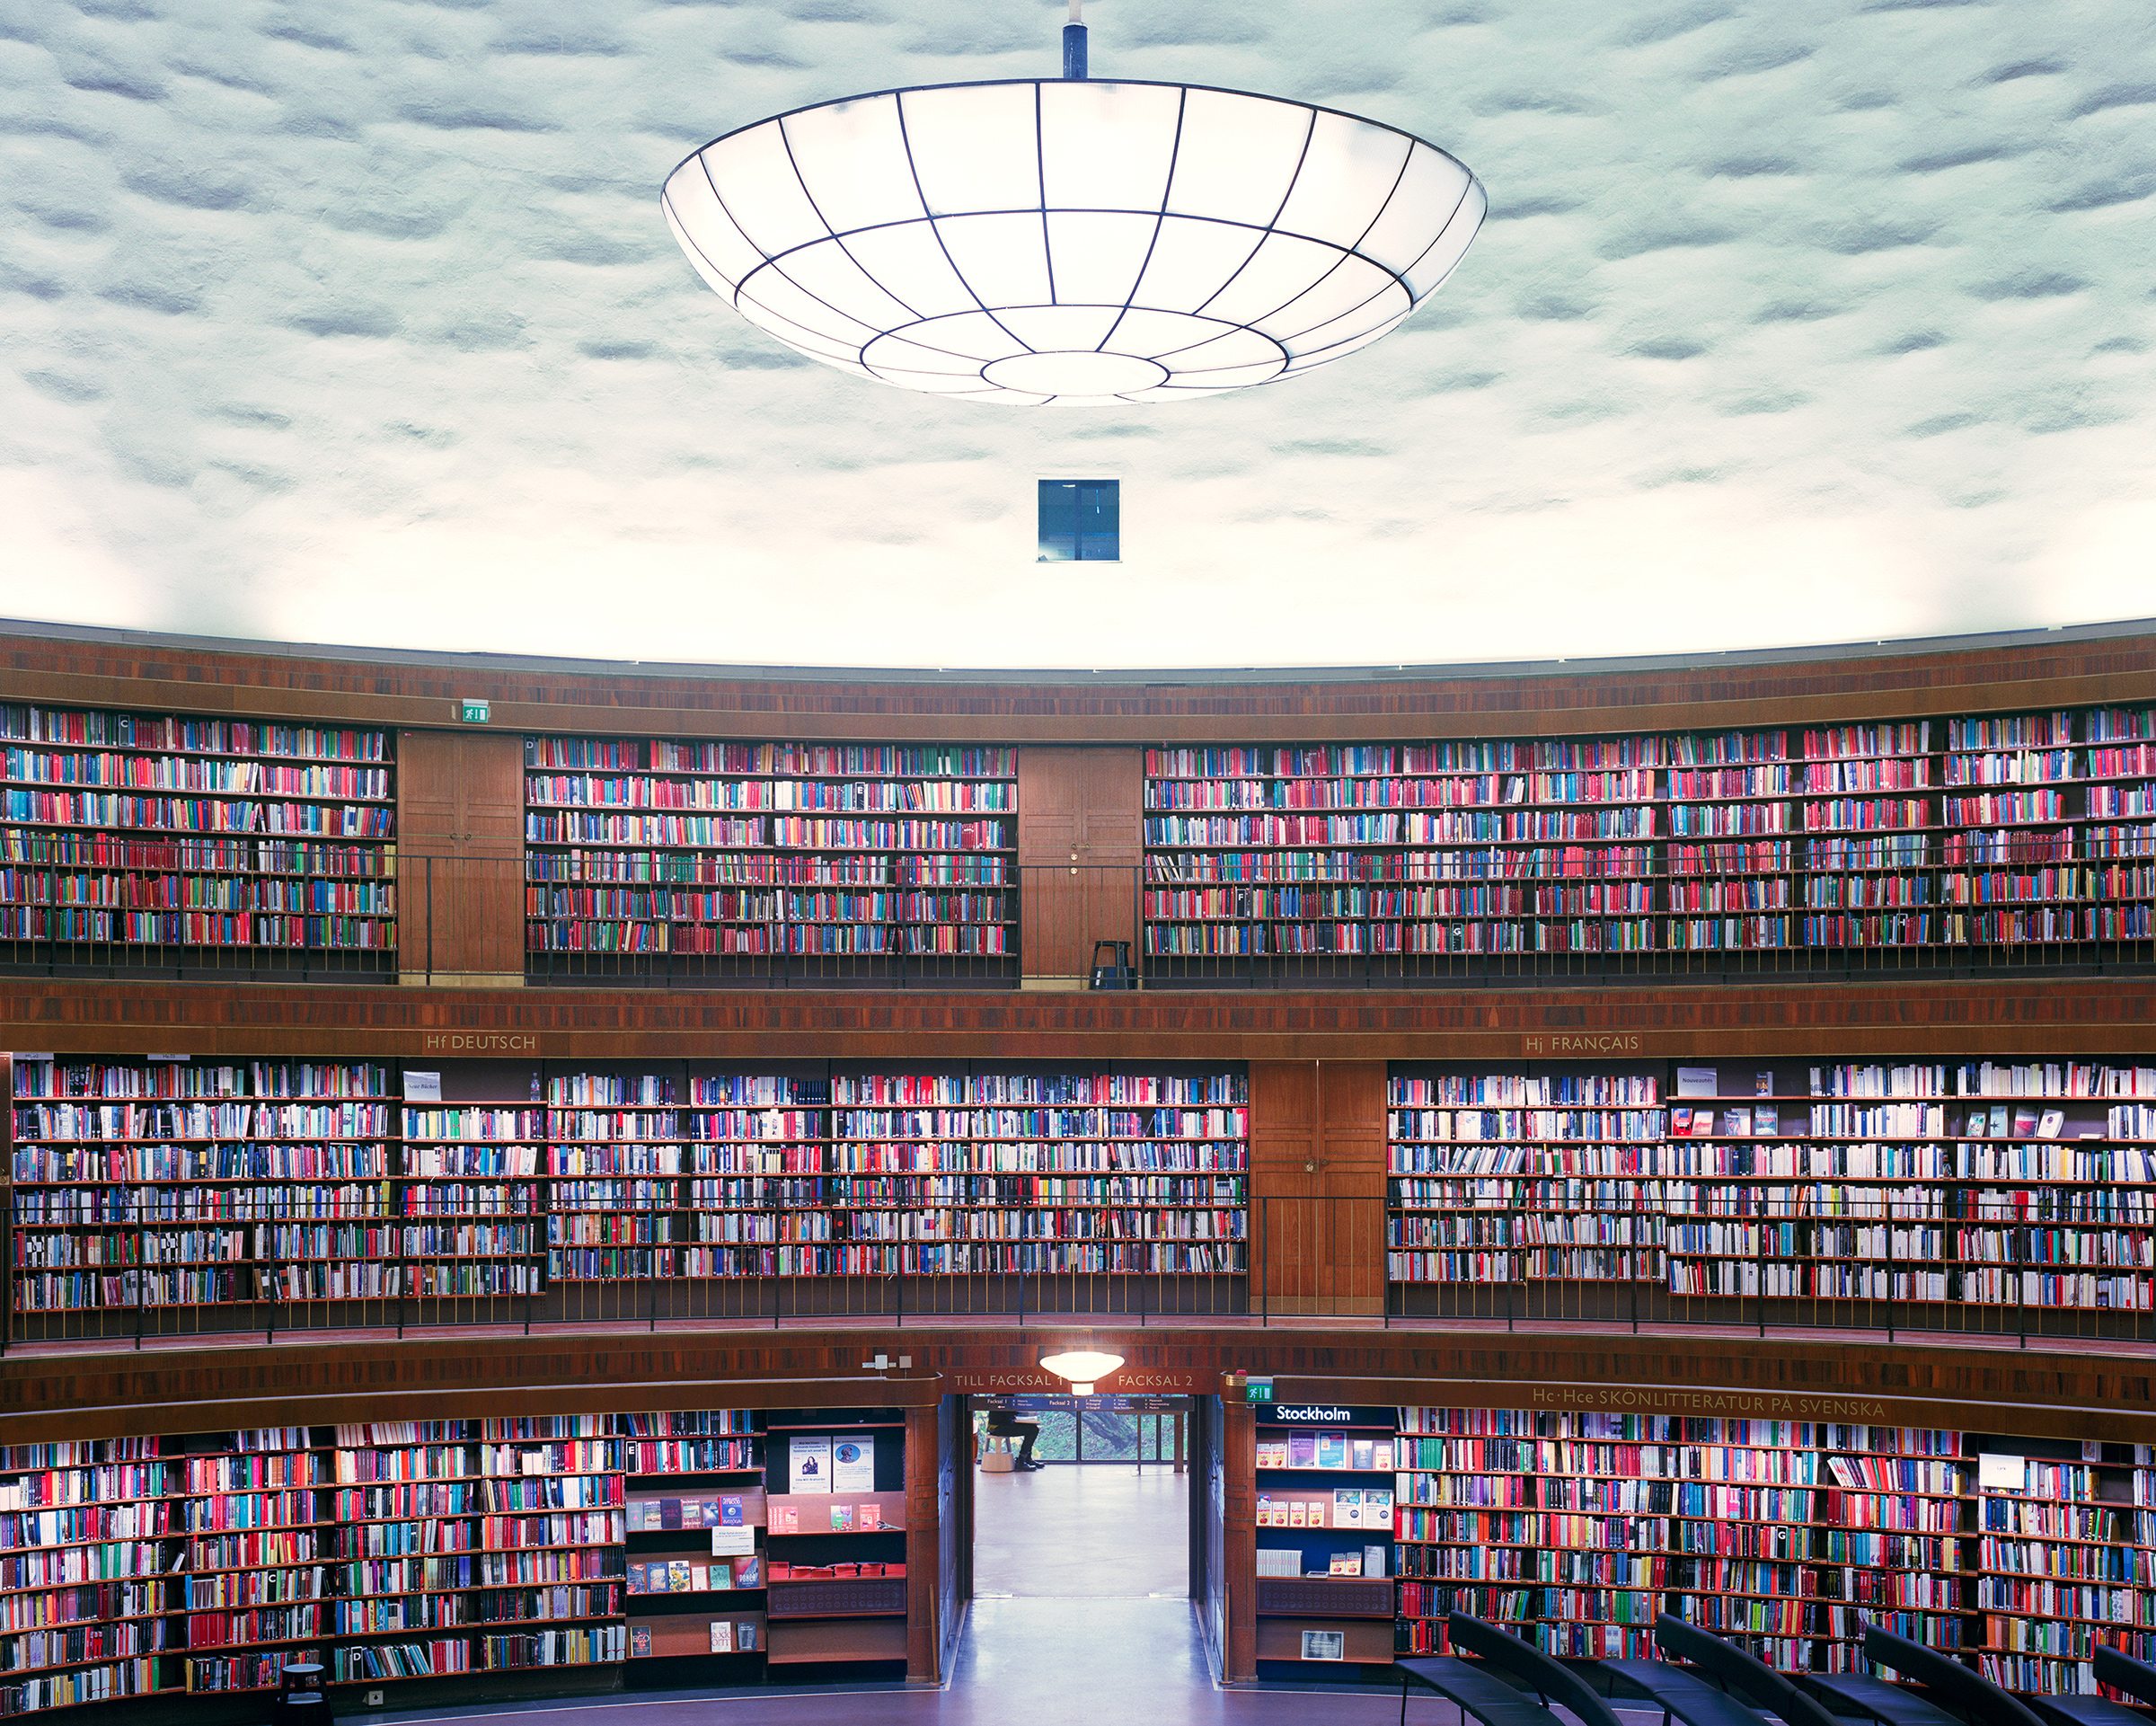 <p>Стокгольмская общественная библиотека &mdash; публичная библиотека в столице Швеции&nbsp;в районе&nbsp; Вазастан. Здесь хранится более 2 млн книг, 2,4 млн аудиокниг и других аудиозаписей. Библиотеку должны были расширить, но в 2009 году приостановили проект.</p>

<p>В 2015 году в подвалах хранилища было обнаружено превышение в 100 раз допустимой концентрации&nbsp;радона &mdash; бесцветного газа без запаха, который при регулярном и продолжительном вдыхании может привести к раку легких. Источником радона часто является грунт, породы которого содержат то или иное количество урана.</p>

<p>Около 350 тыс. книг, хранящихся в подвале библиотеки, <a href="http://vakna.blogspot.ru/2015/05/radonskandalen-drabbar-diktsamlingarna_5.html">оказались</a>&nbsp;непригодными для чтения, распространения и копирования информации.</p>
